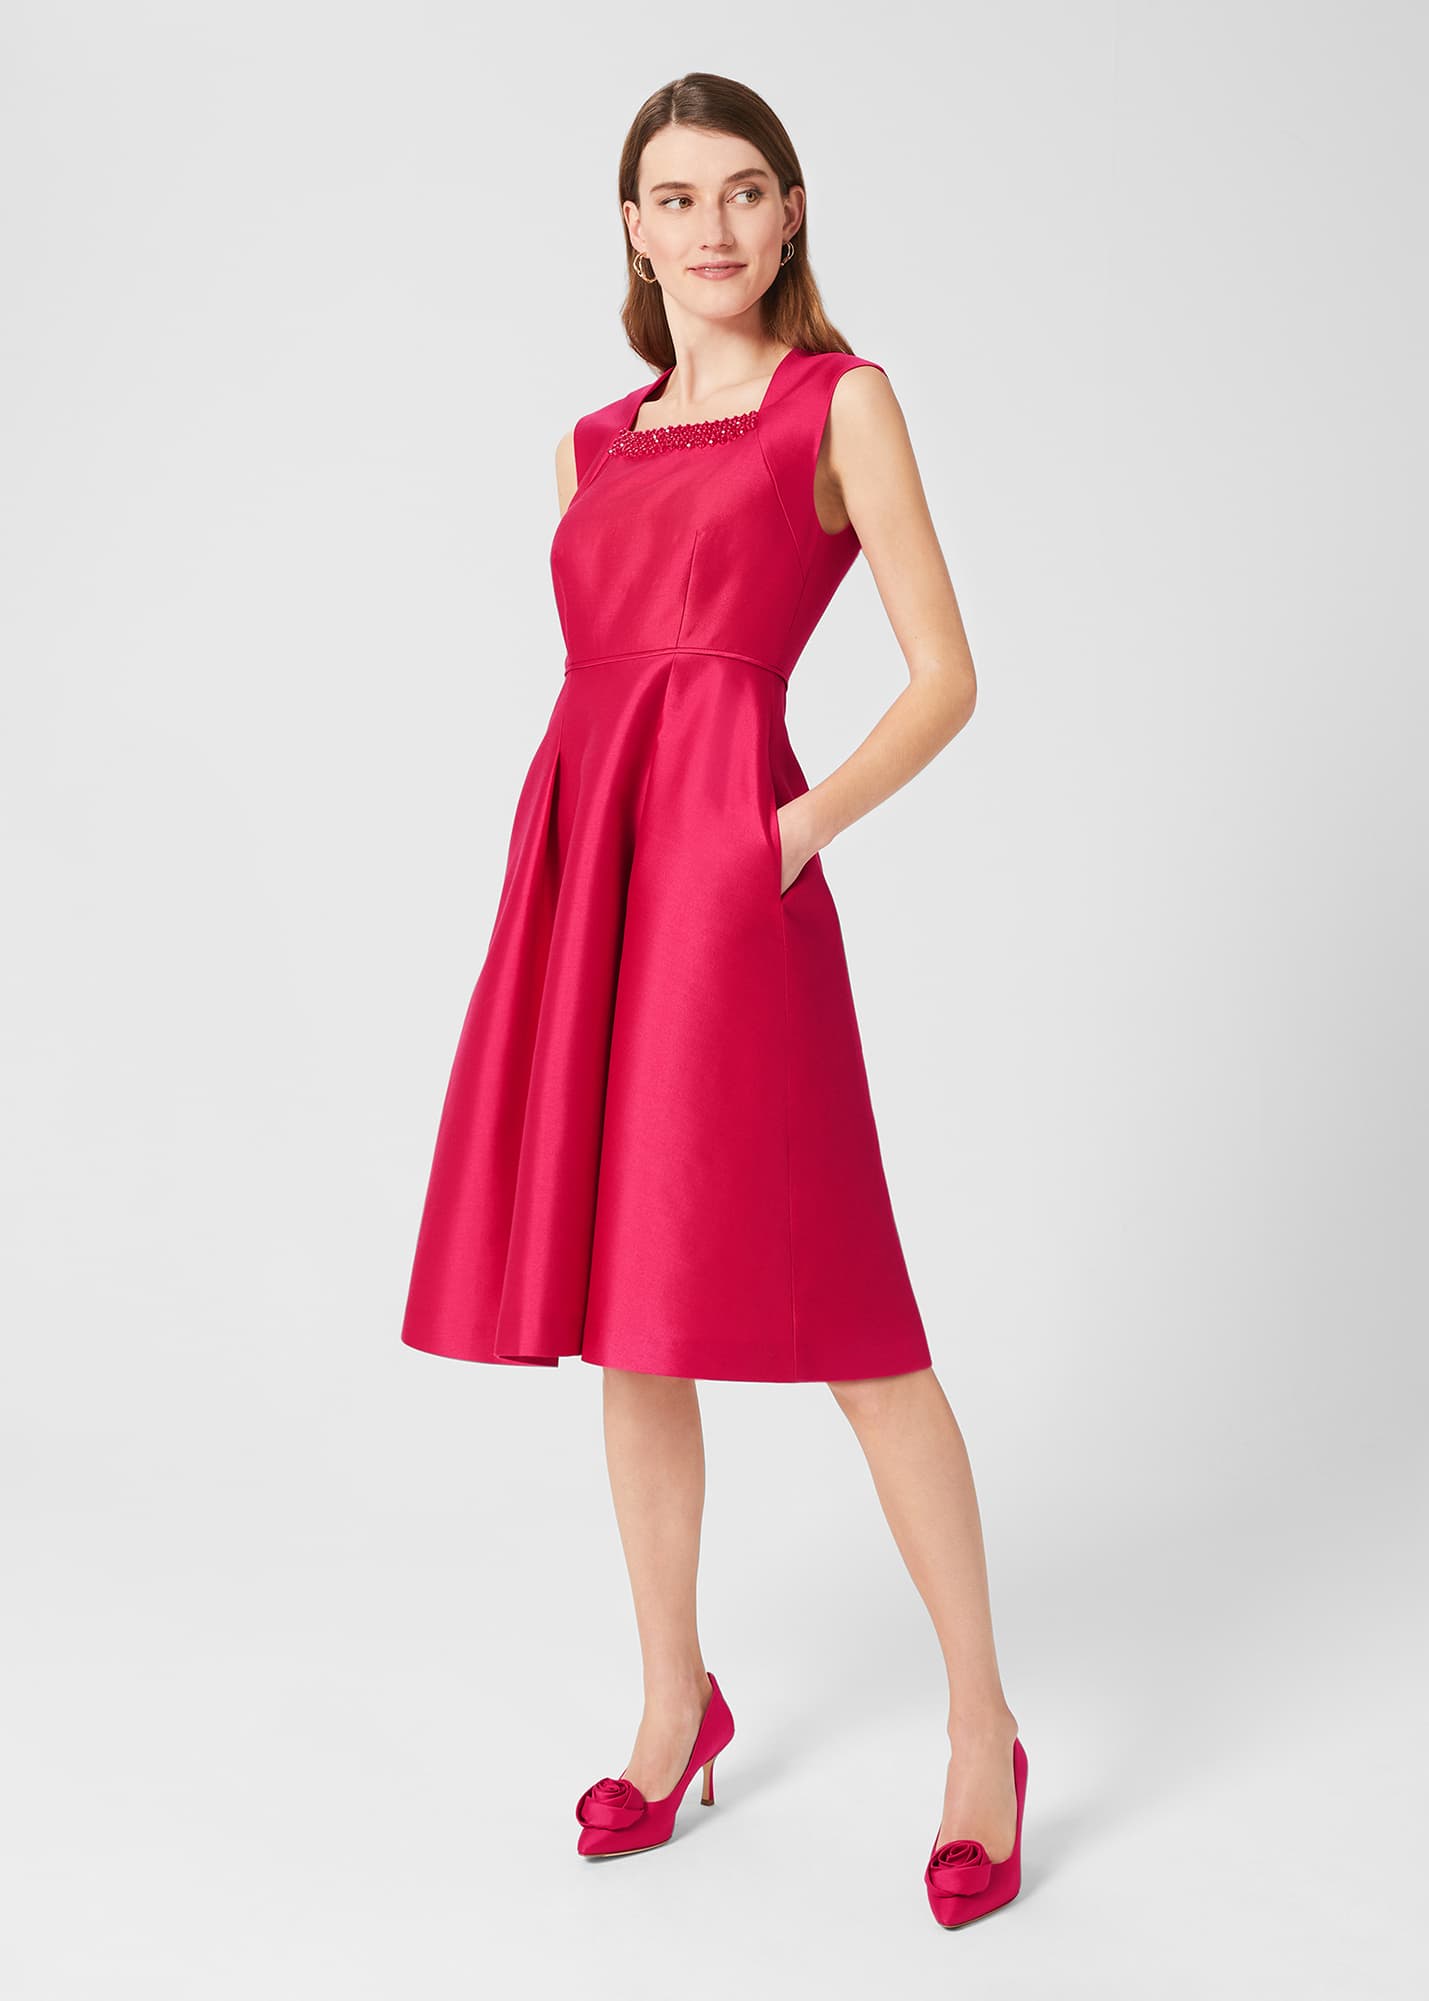 Hobbs Women's Julietta Silk Blend Fit And Flare Dress - Fuchsia Pink